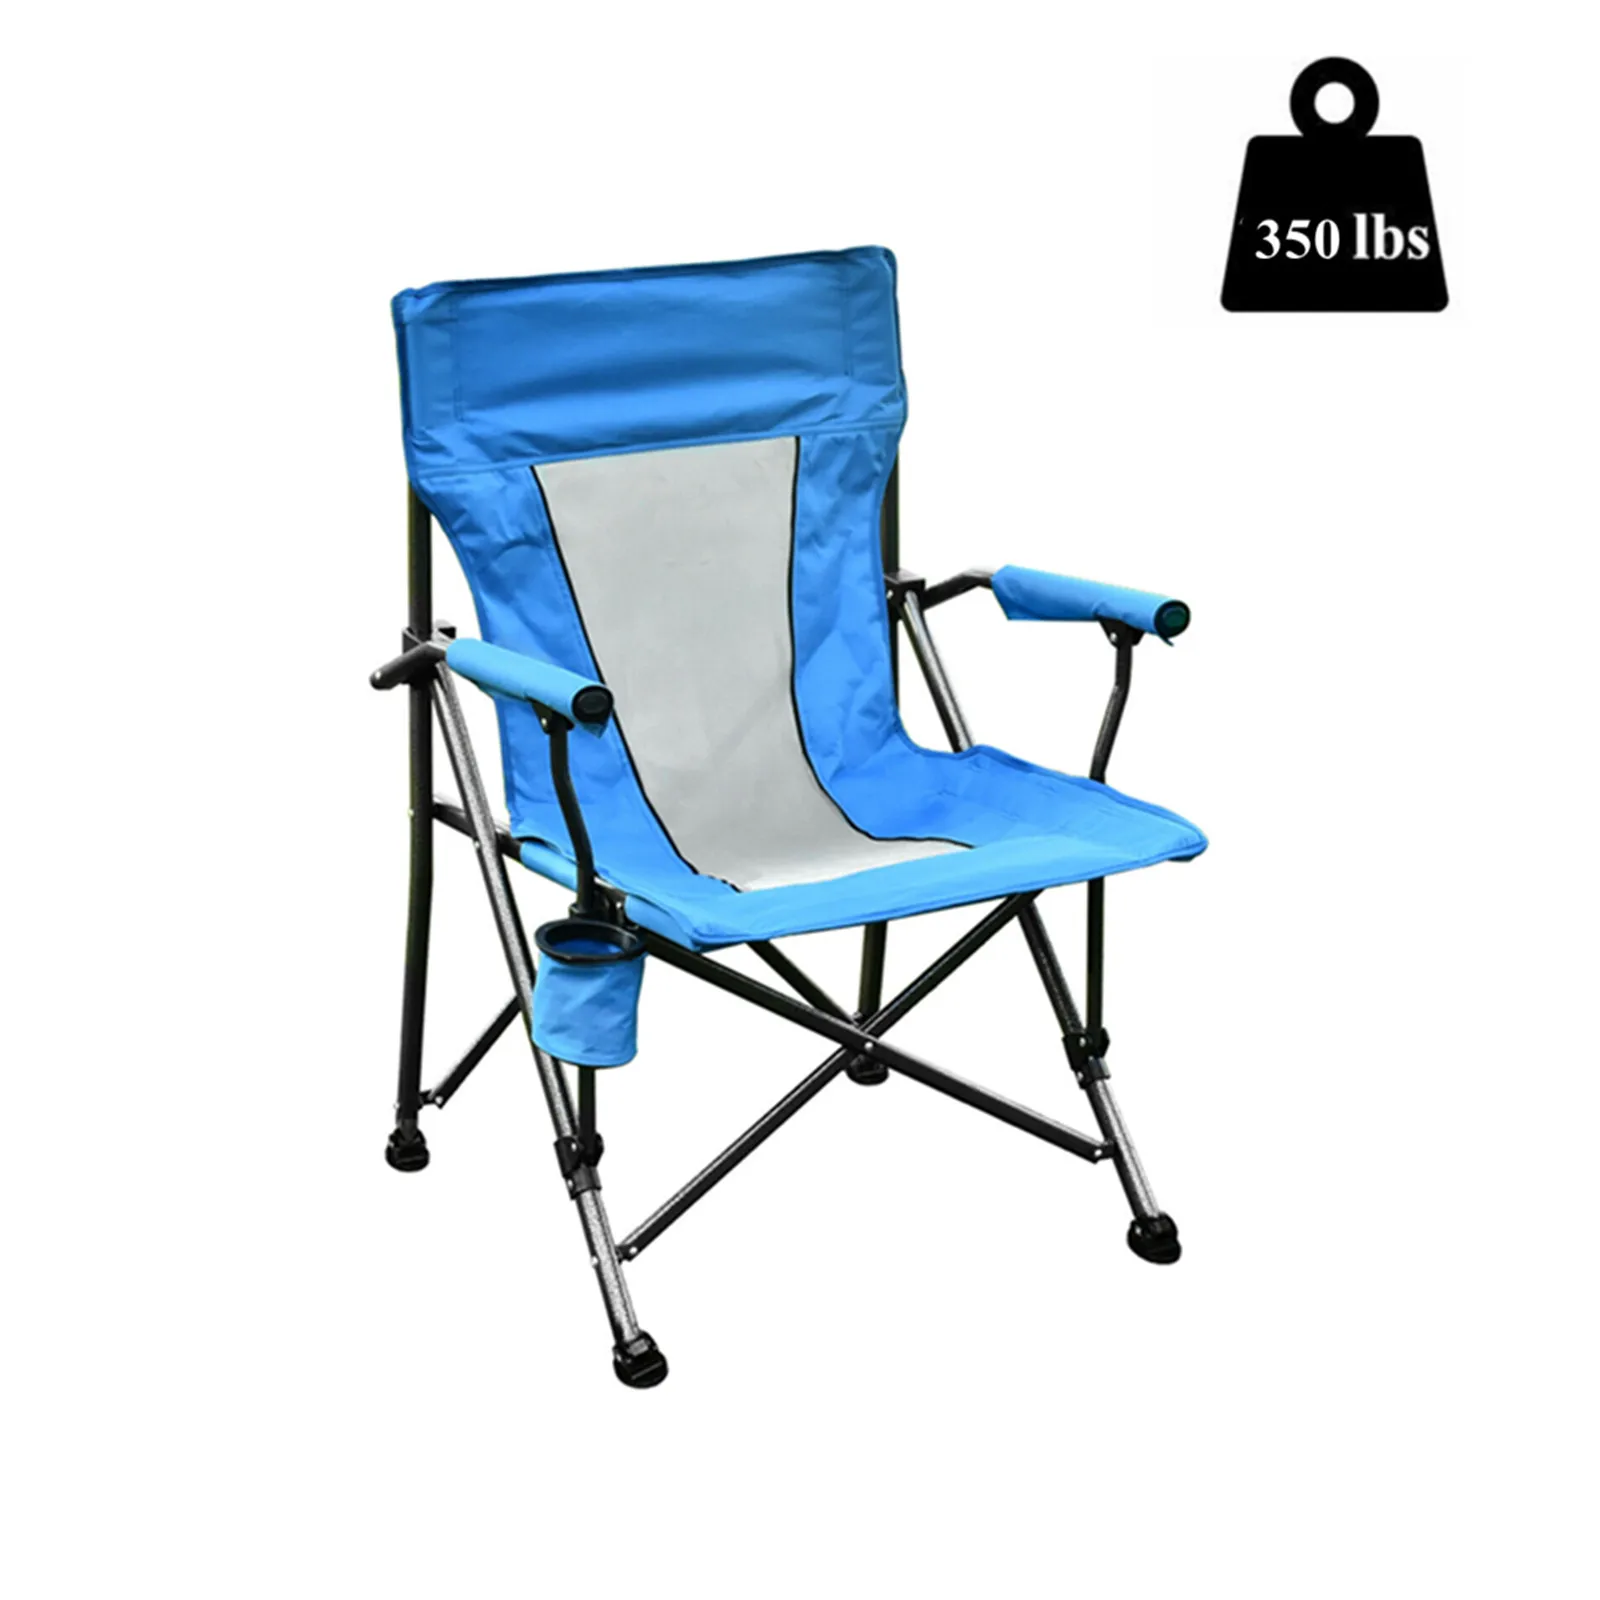 저렴한 휴대용 접이식 의자 600D PVC 캠핑 의자 강철 프레임 하중 지지 350 Lbs 컵 홀더 및 쿠션 강화 [미국 재고]